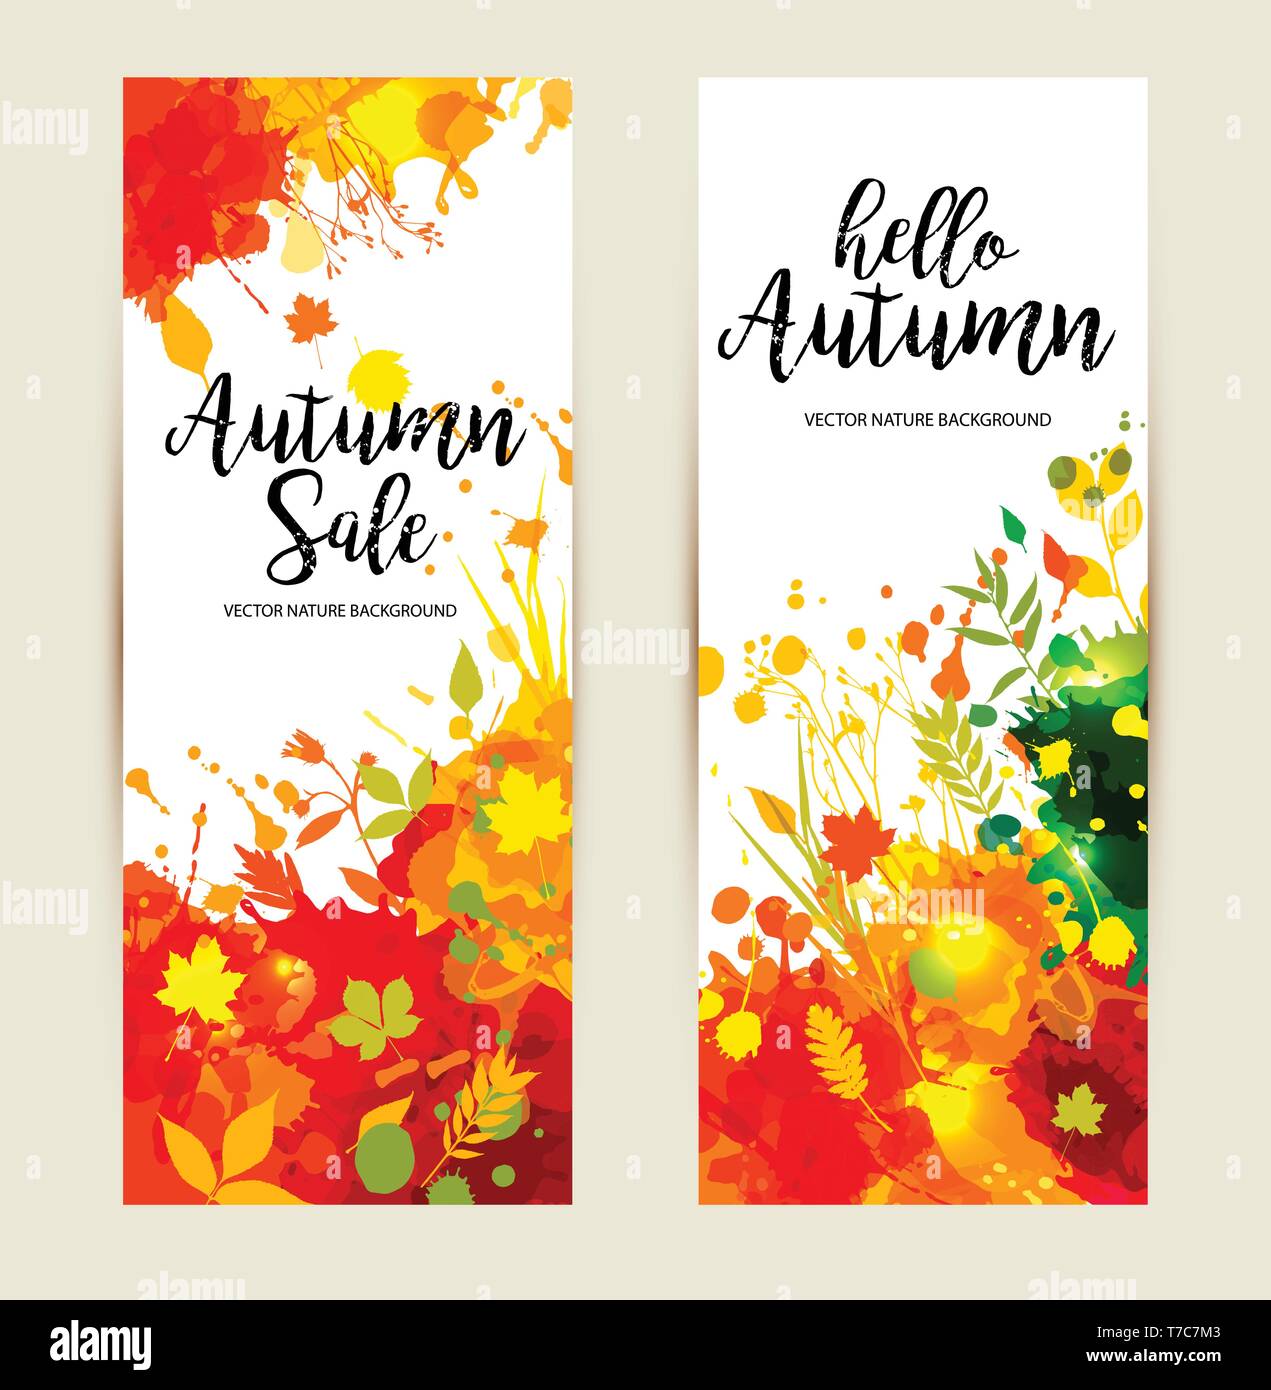 Kalligrafische Text Verkauf auf multicolor blots Hintergrund. Hand grunge blots Elemente dargestellt. Herbste Banner gesetzt. Stock Vektor